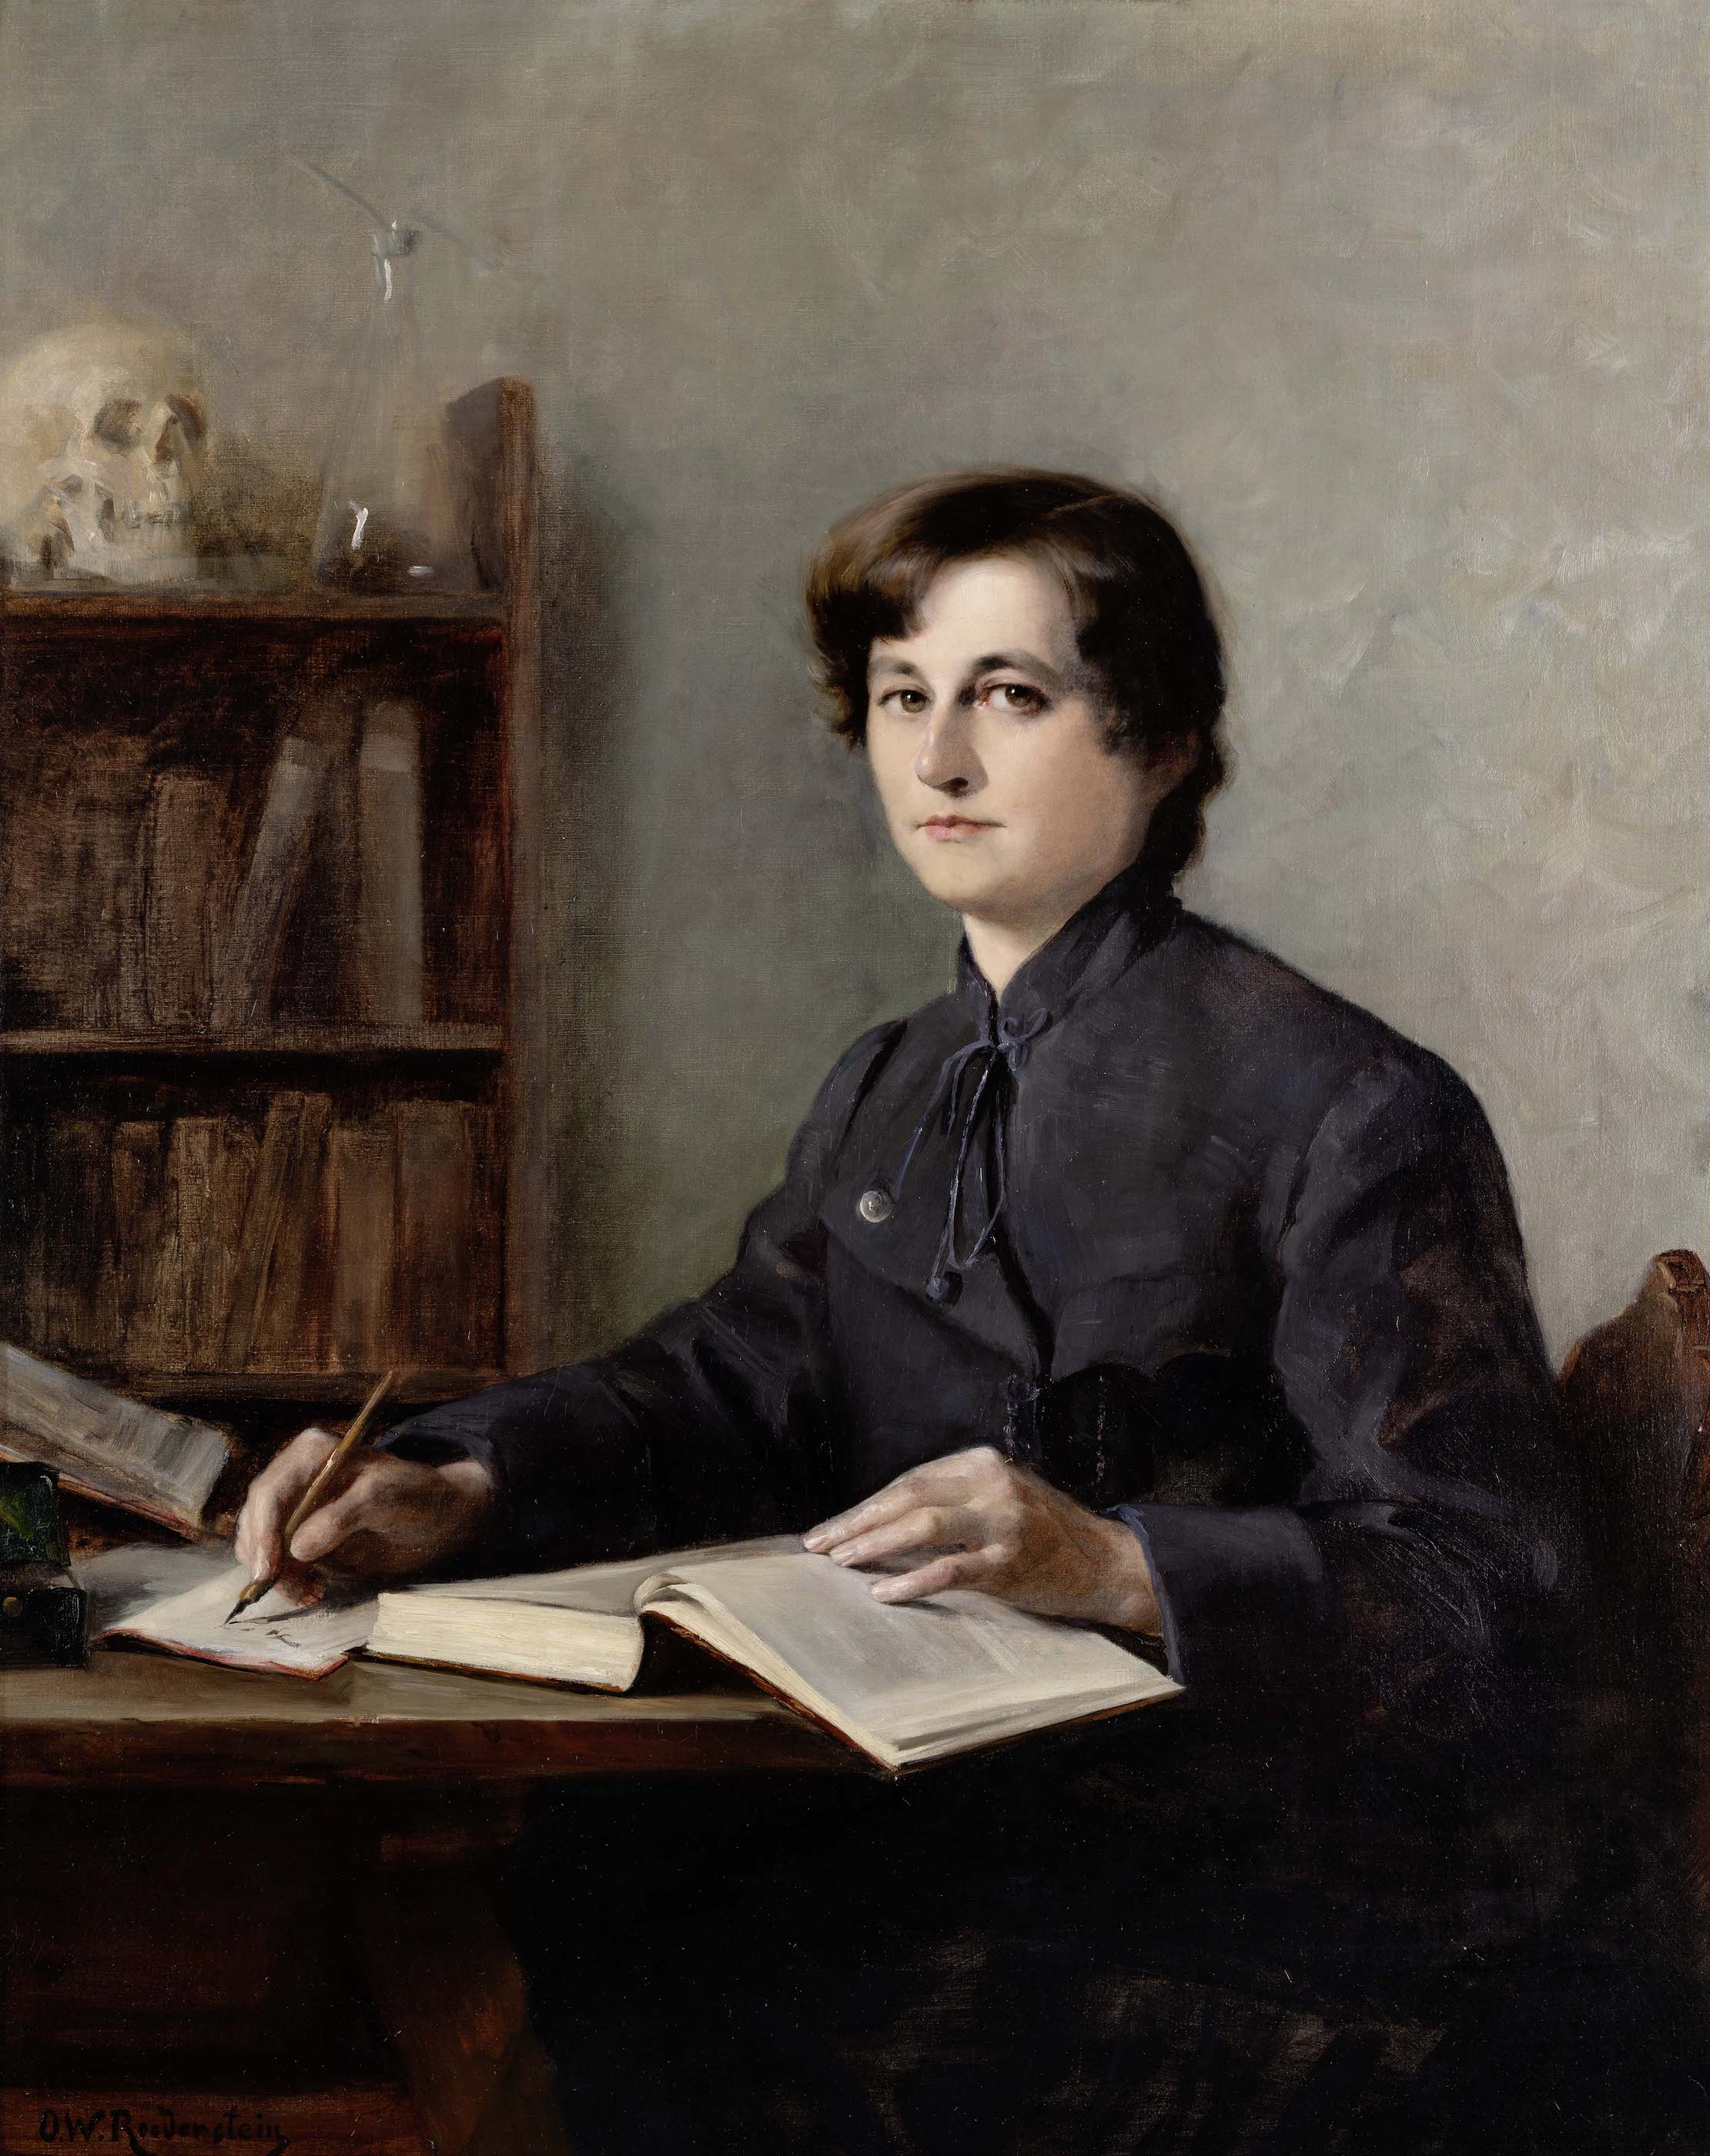 医師エリザベス・ヴィンターハルターの肖像 by Ottilie W. Roederstein - 1887〜1888年 - 102.1 x 82 cm 